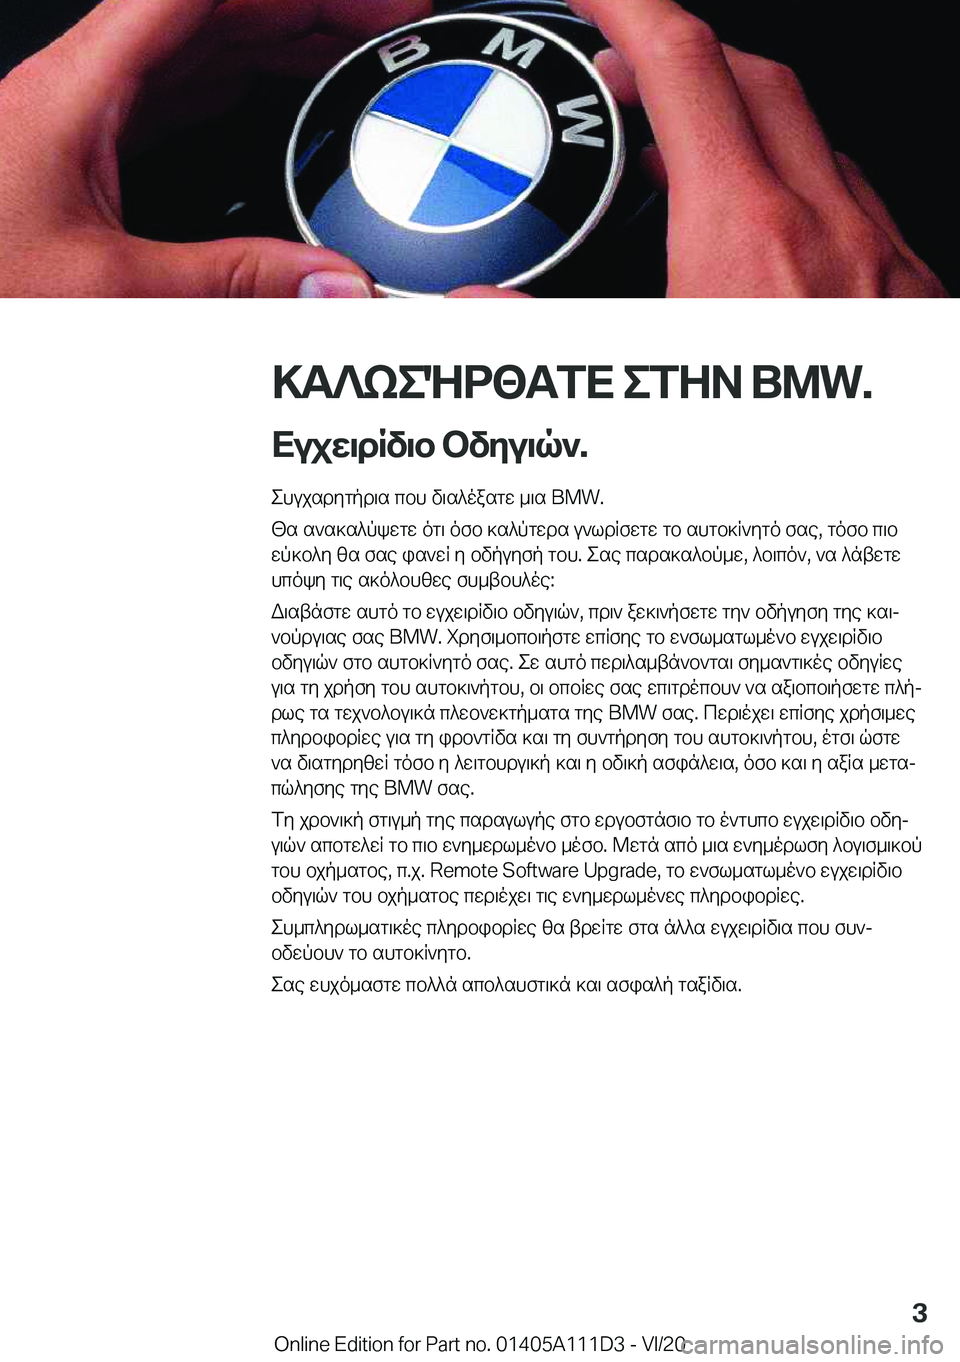 BMW 3 SERIES SEDAN PLUG-IN HYBRID 2021  ΟΔΗΓΌΣ ΧΡΉΣΗΣ (in Greek) >T?keNd<TfX�efZA��B�M�W�.
Xujw\dRv\b�bvyu\q`�. ehujsdygpd\s�cbh�v\s^oasgw�_\s��B�M�W�.
[s�s`s]s^pkwgw�og\�ofb�